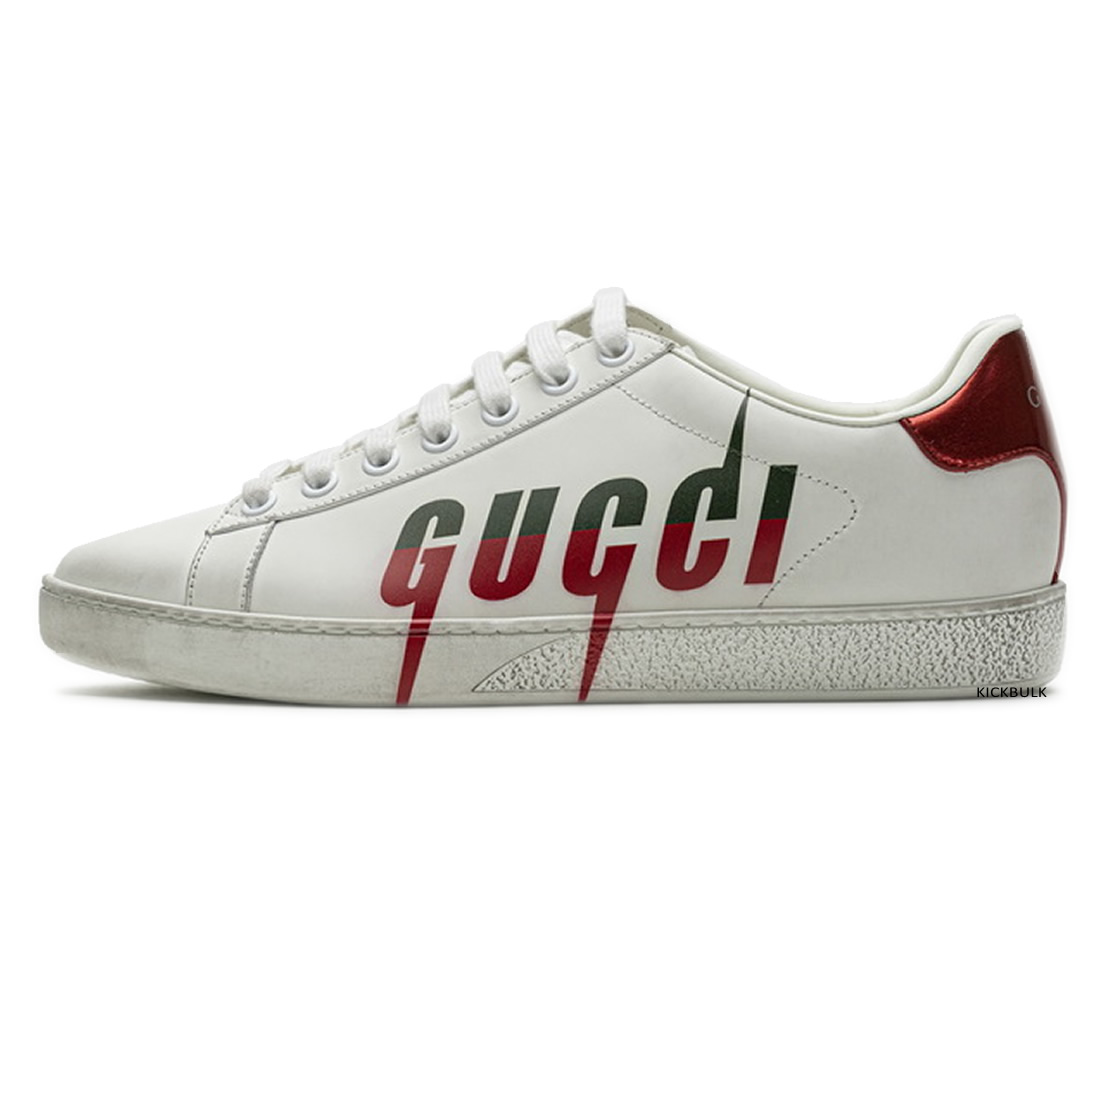 Gucci Lightning Sneakers 429446a39gq9085 1 - kickbulk.co